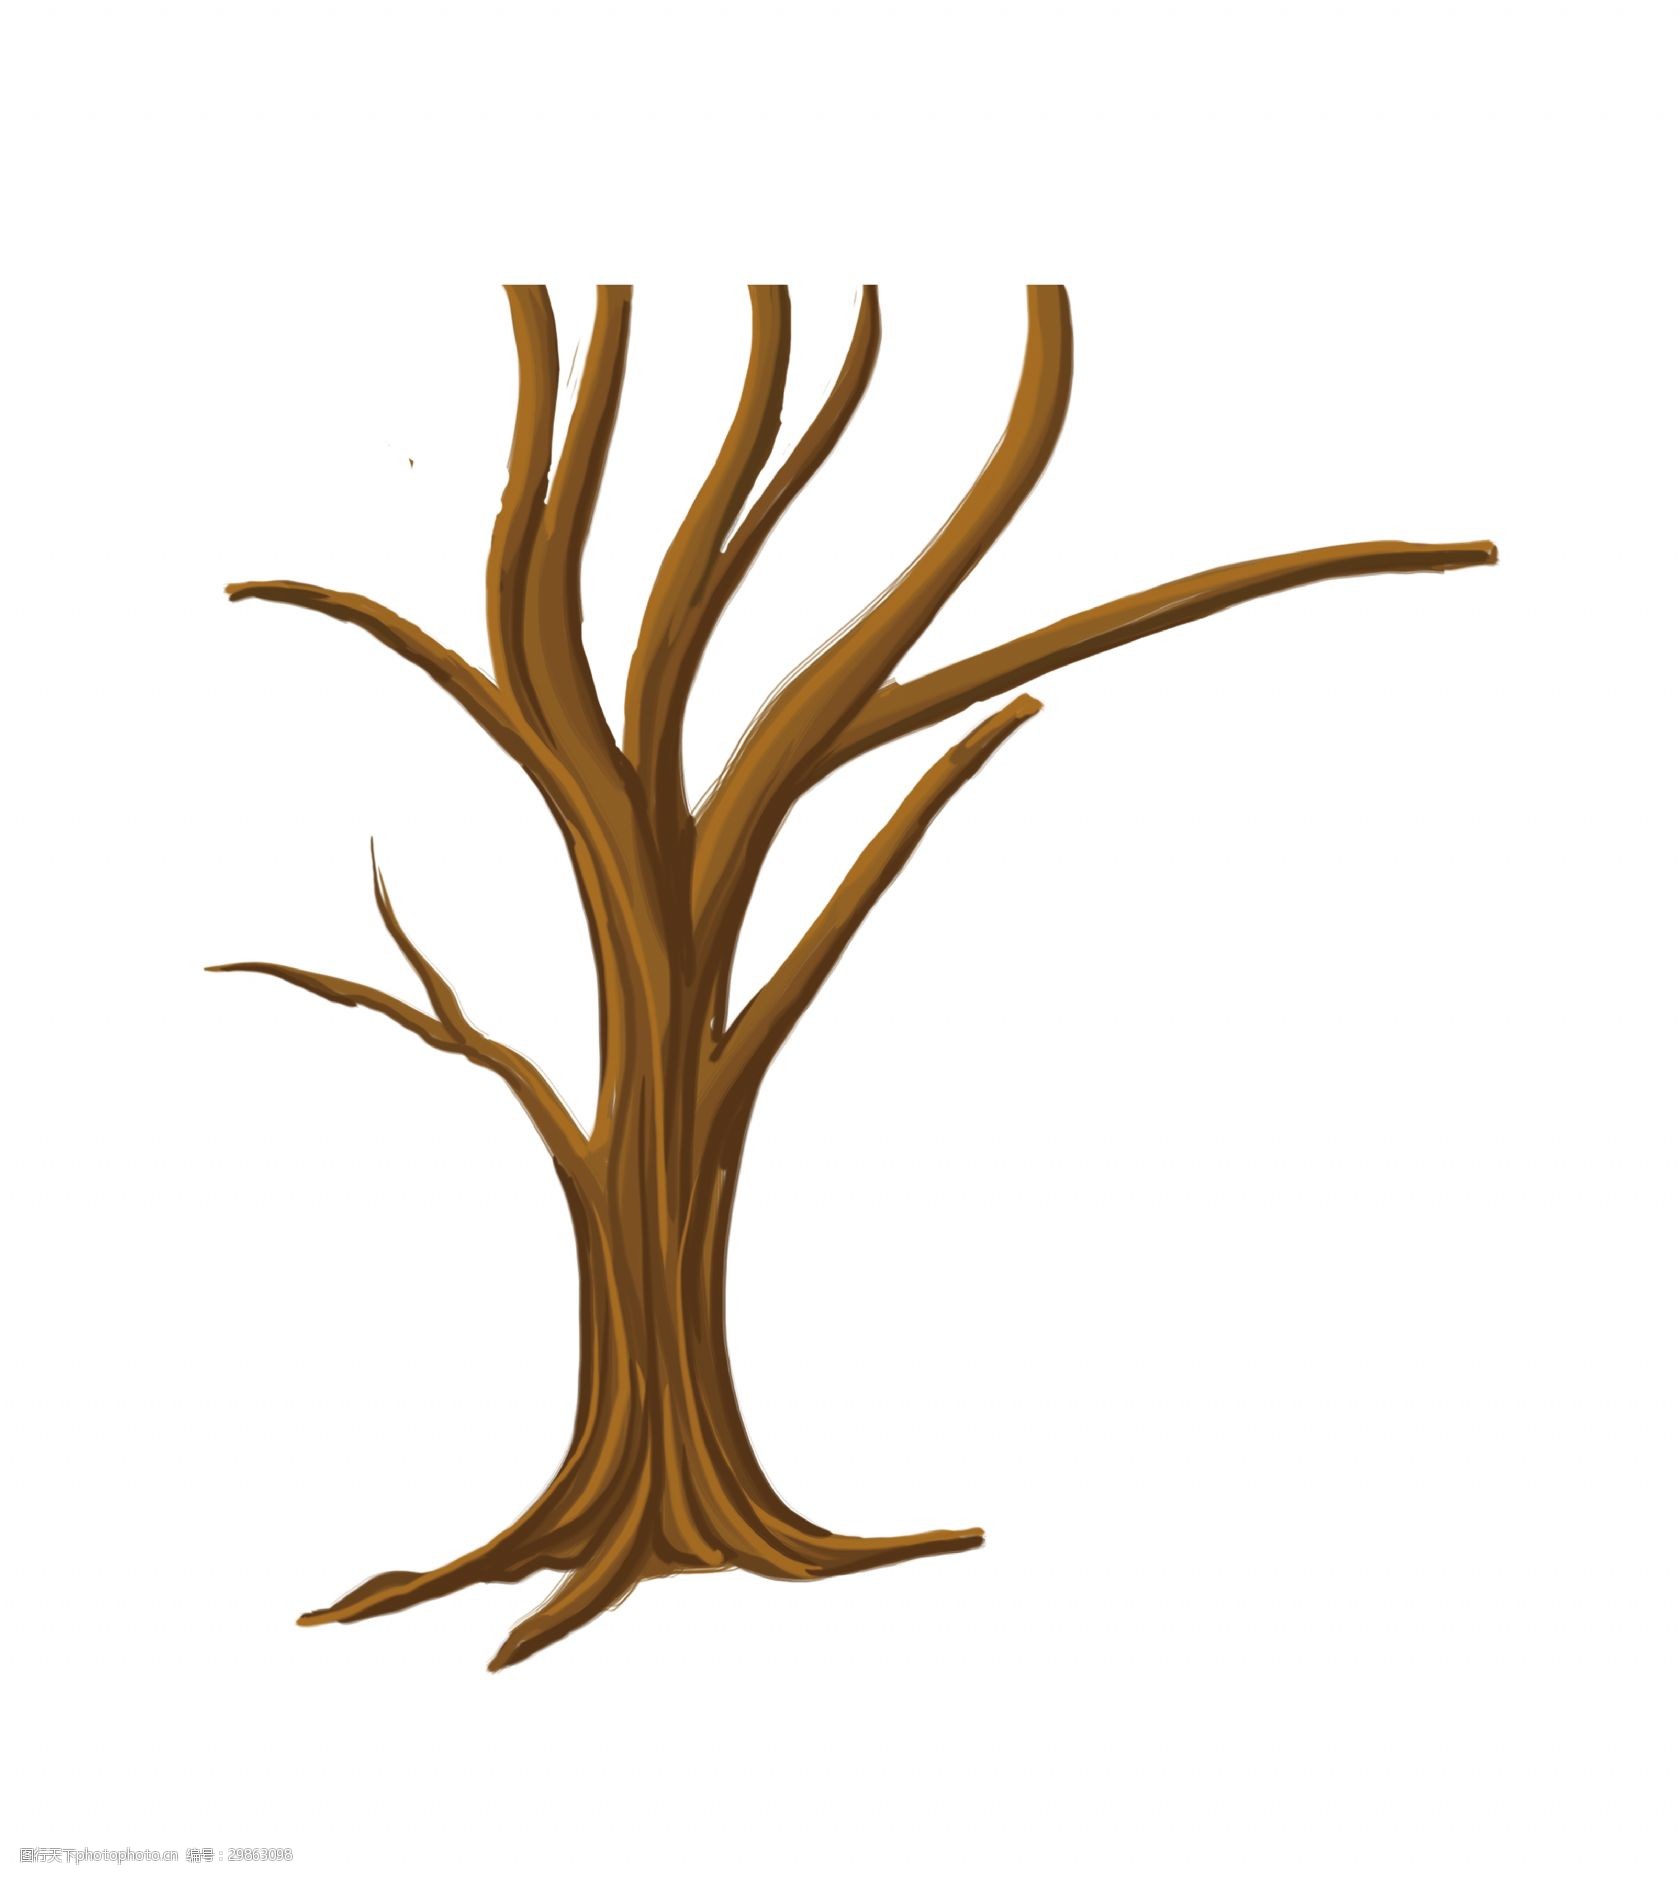 关键词:手绘卡通树木装饰素材 手绘 卡通 树木 装饰 树枝